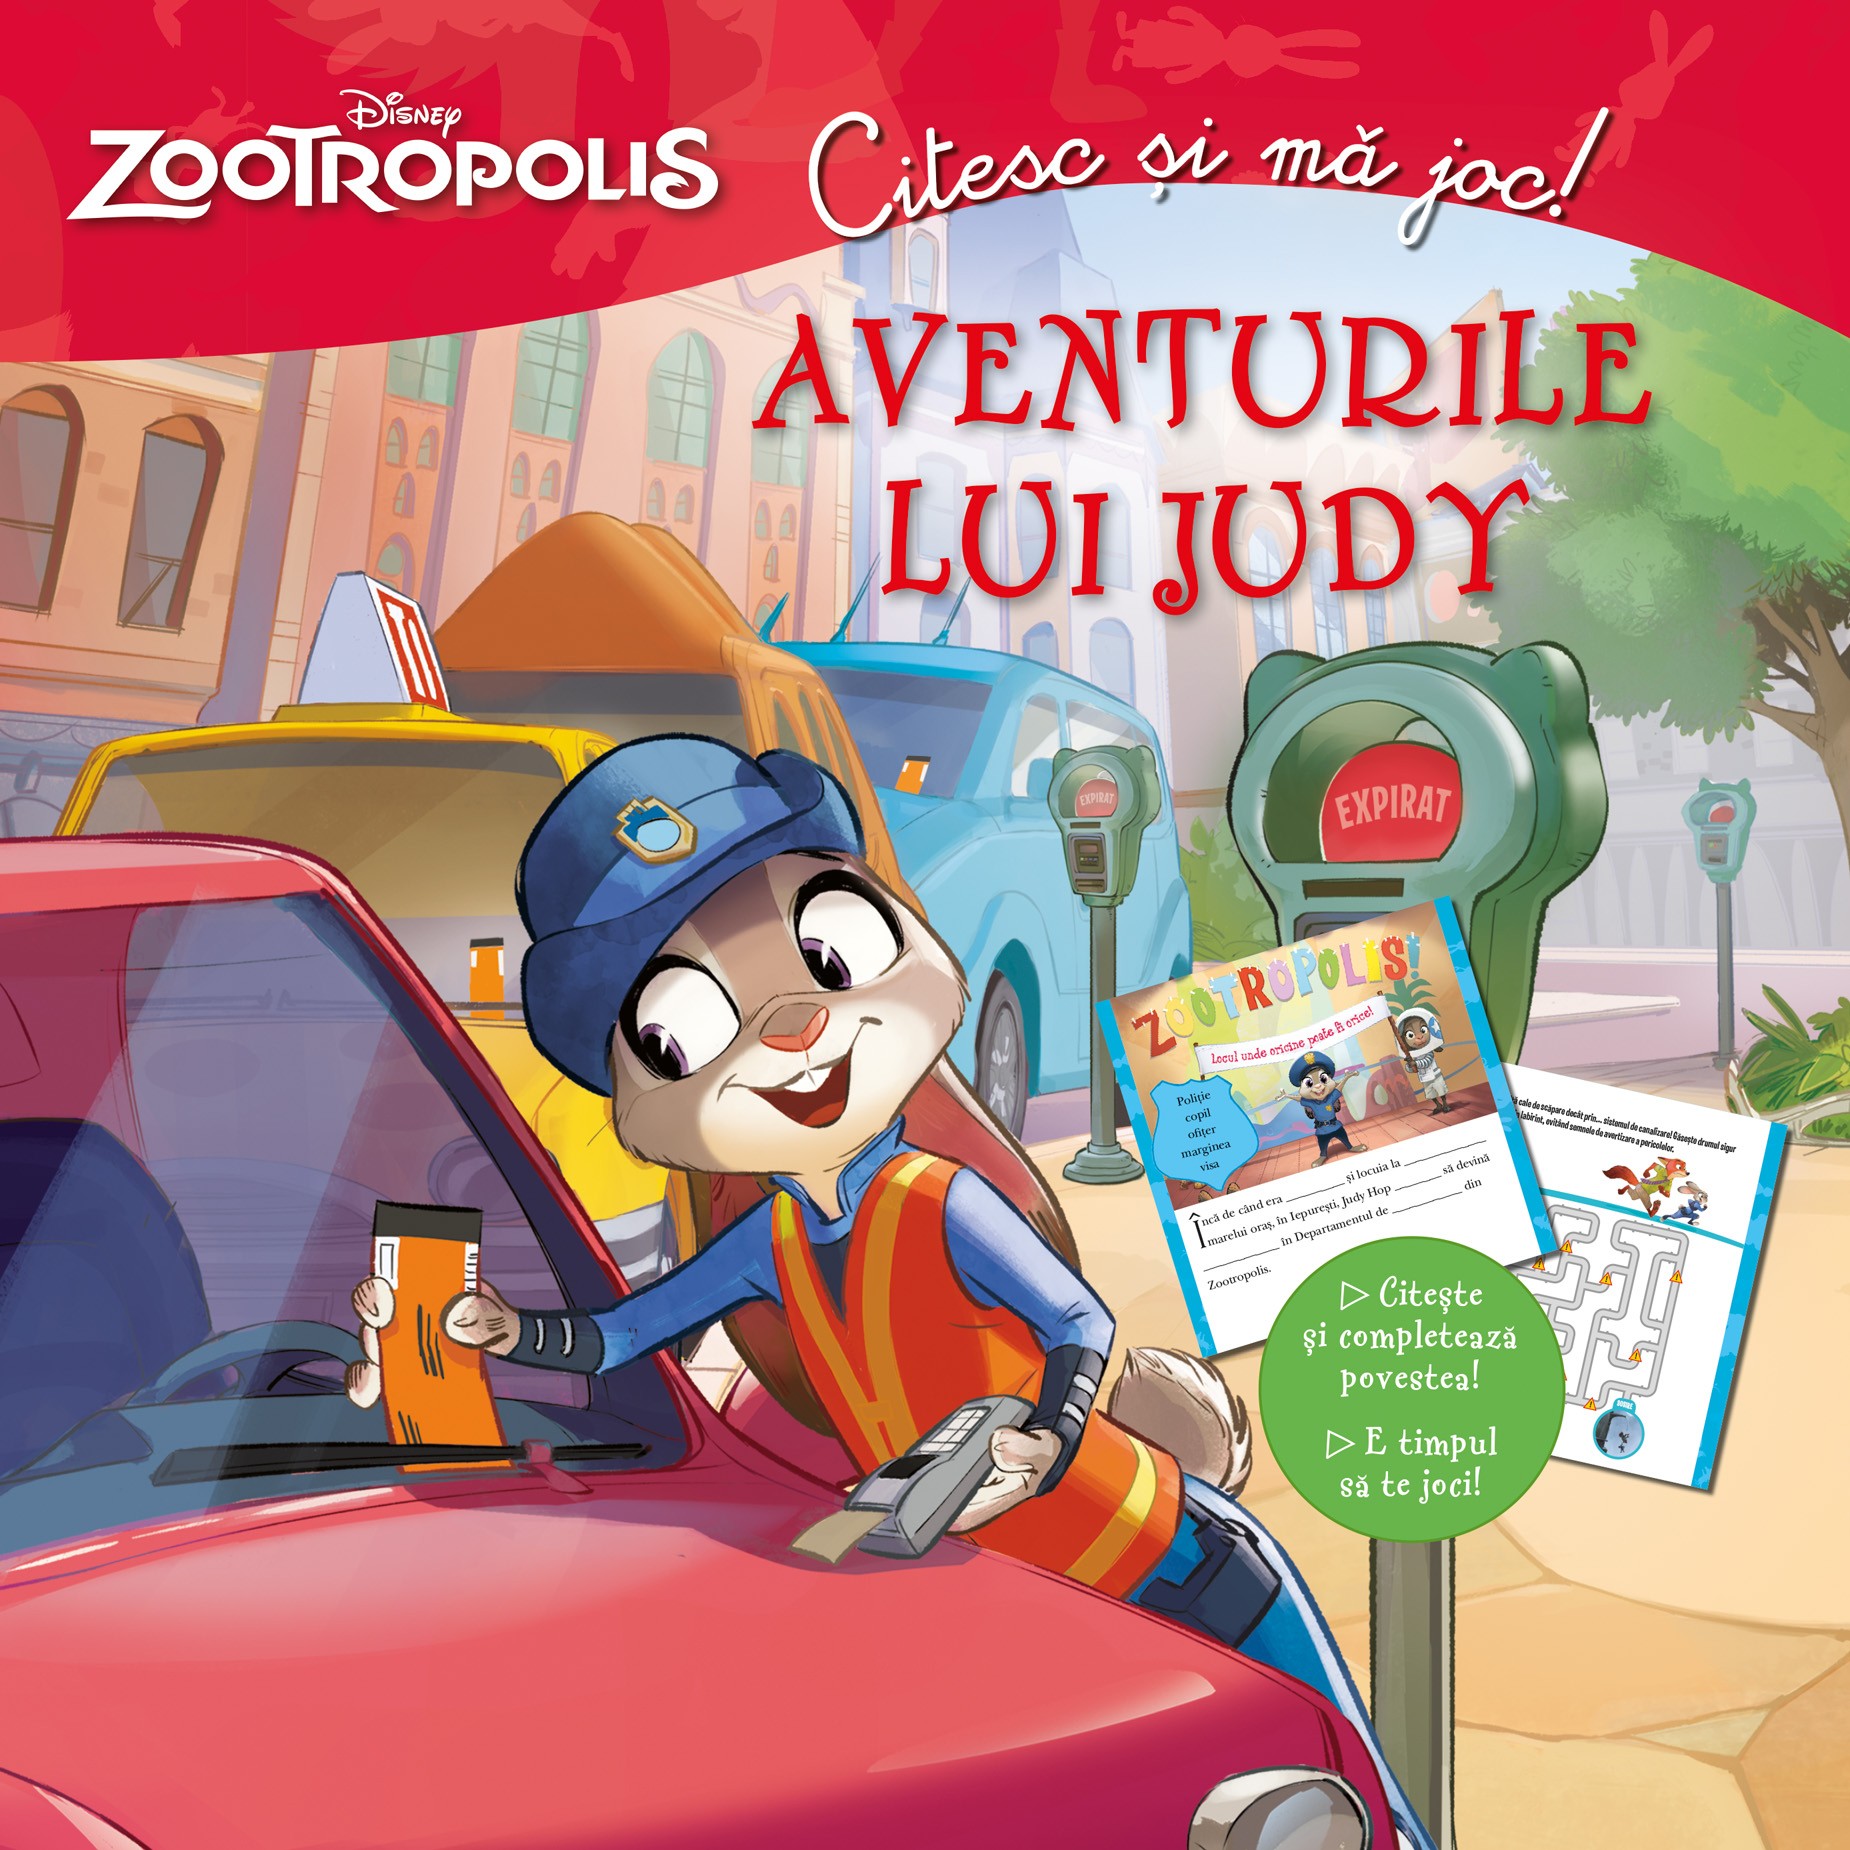 Disney Zootropolis - Aventurile lui Judy - Citesc si ma joc!